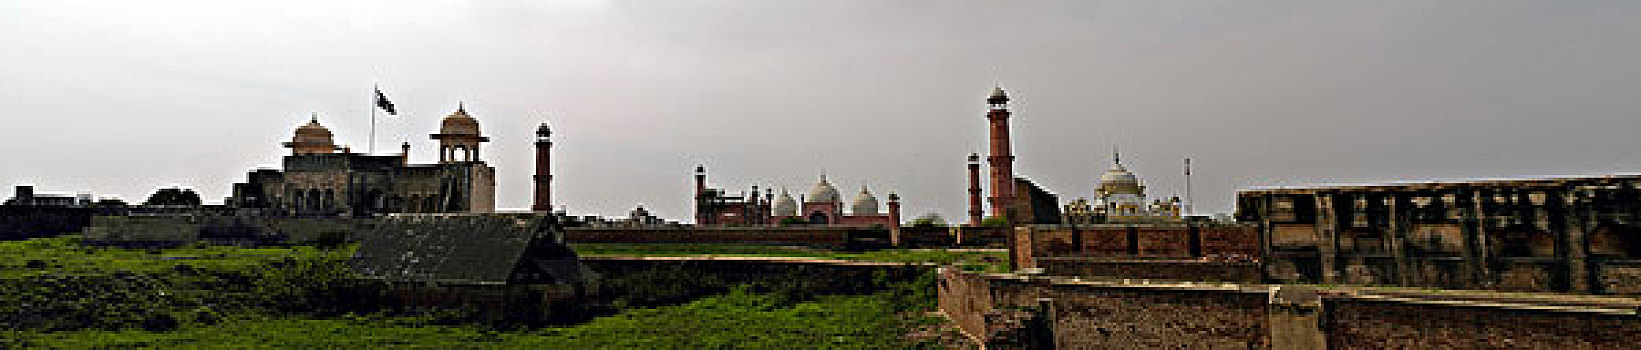 全景,巴德夏希清真寺,清真寺,拉合尔,巴基斯坦,2005年